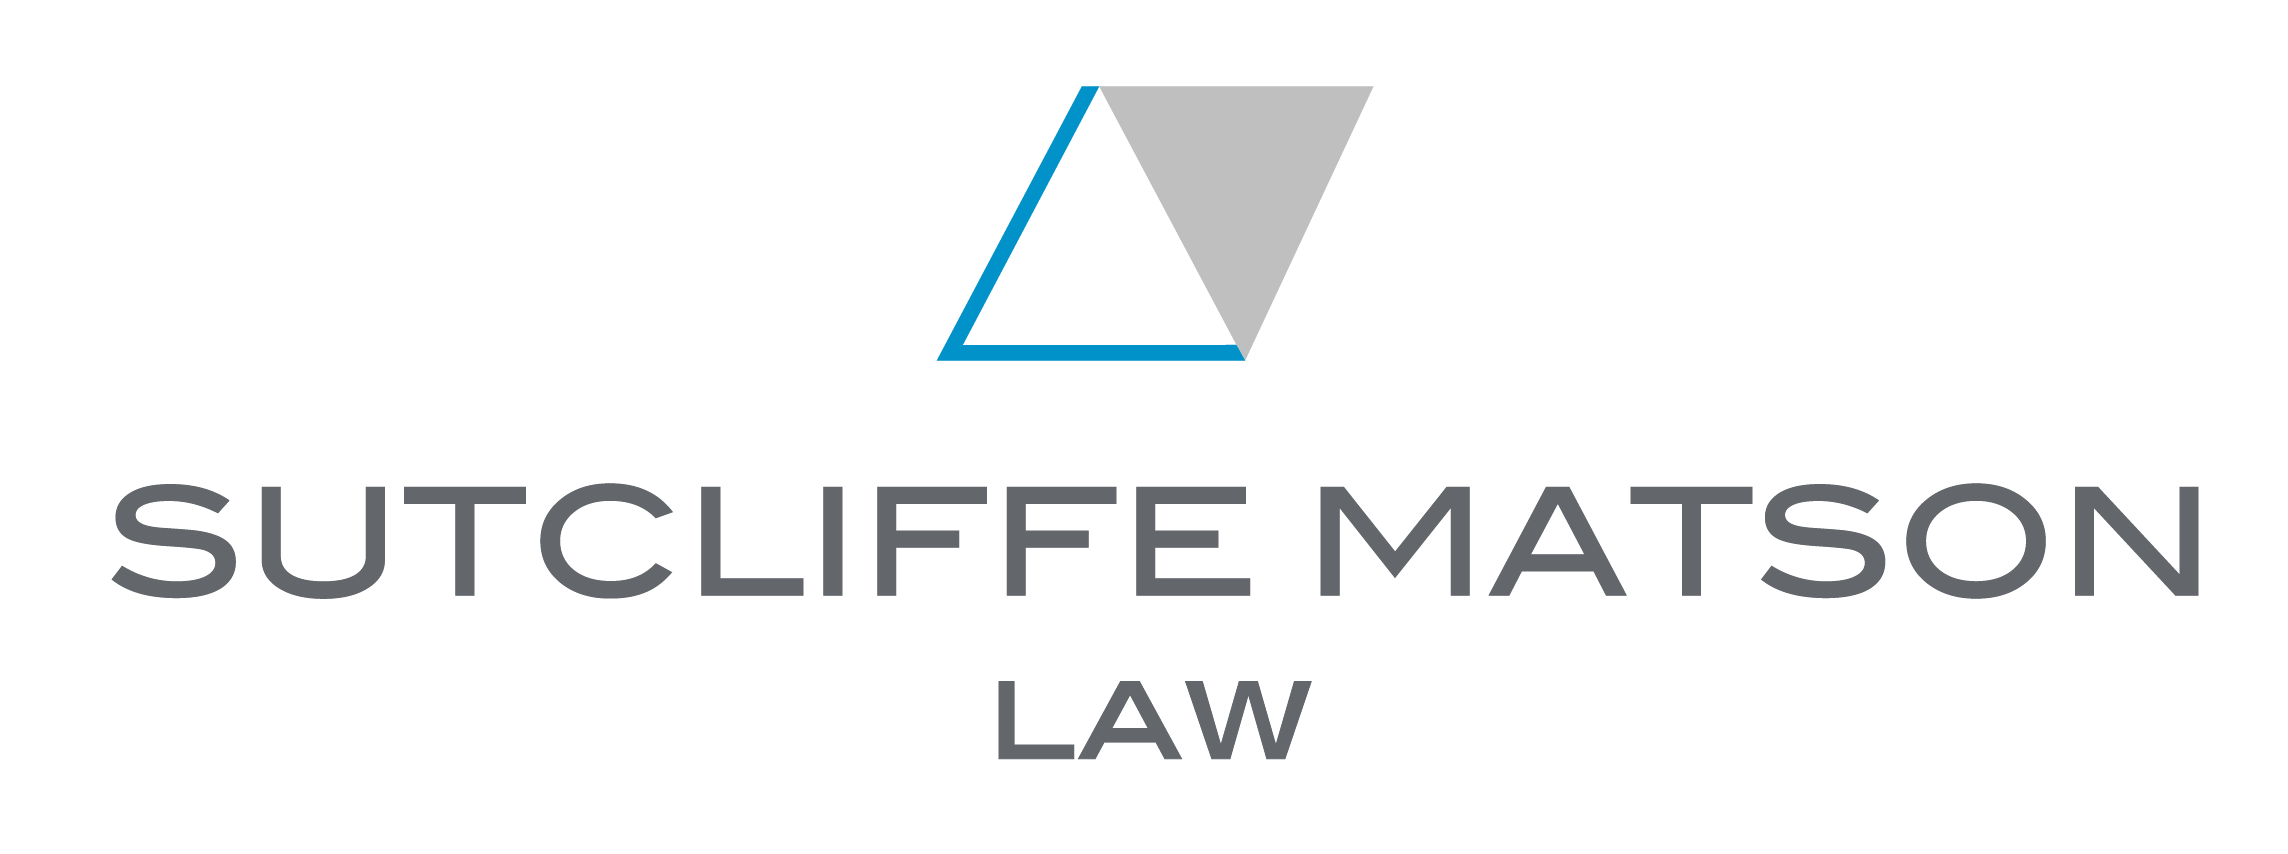 Sutcliffe Matson Law